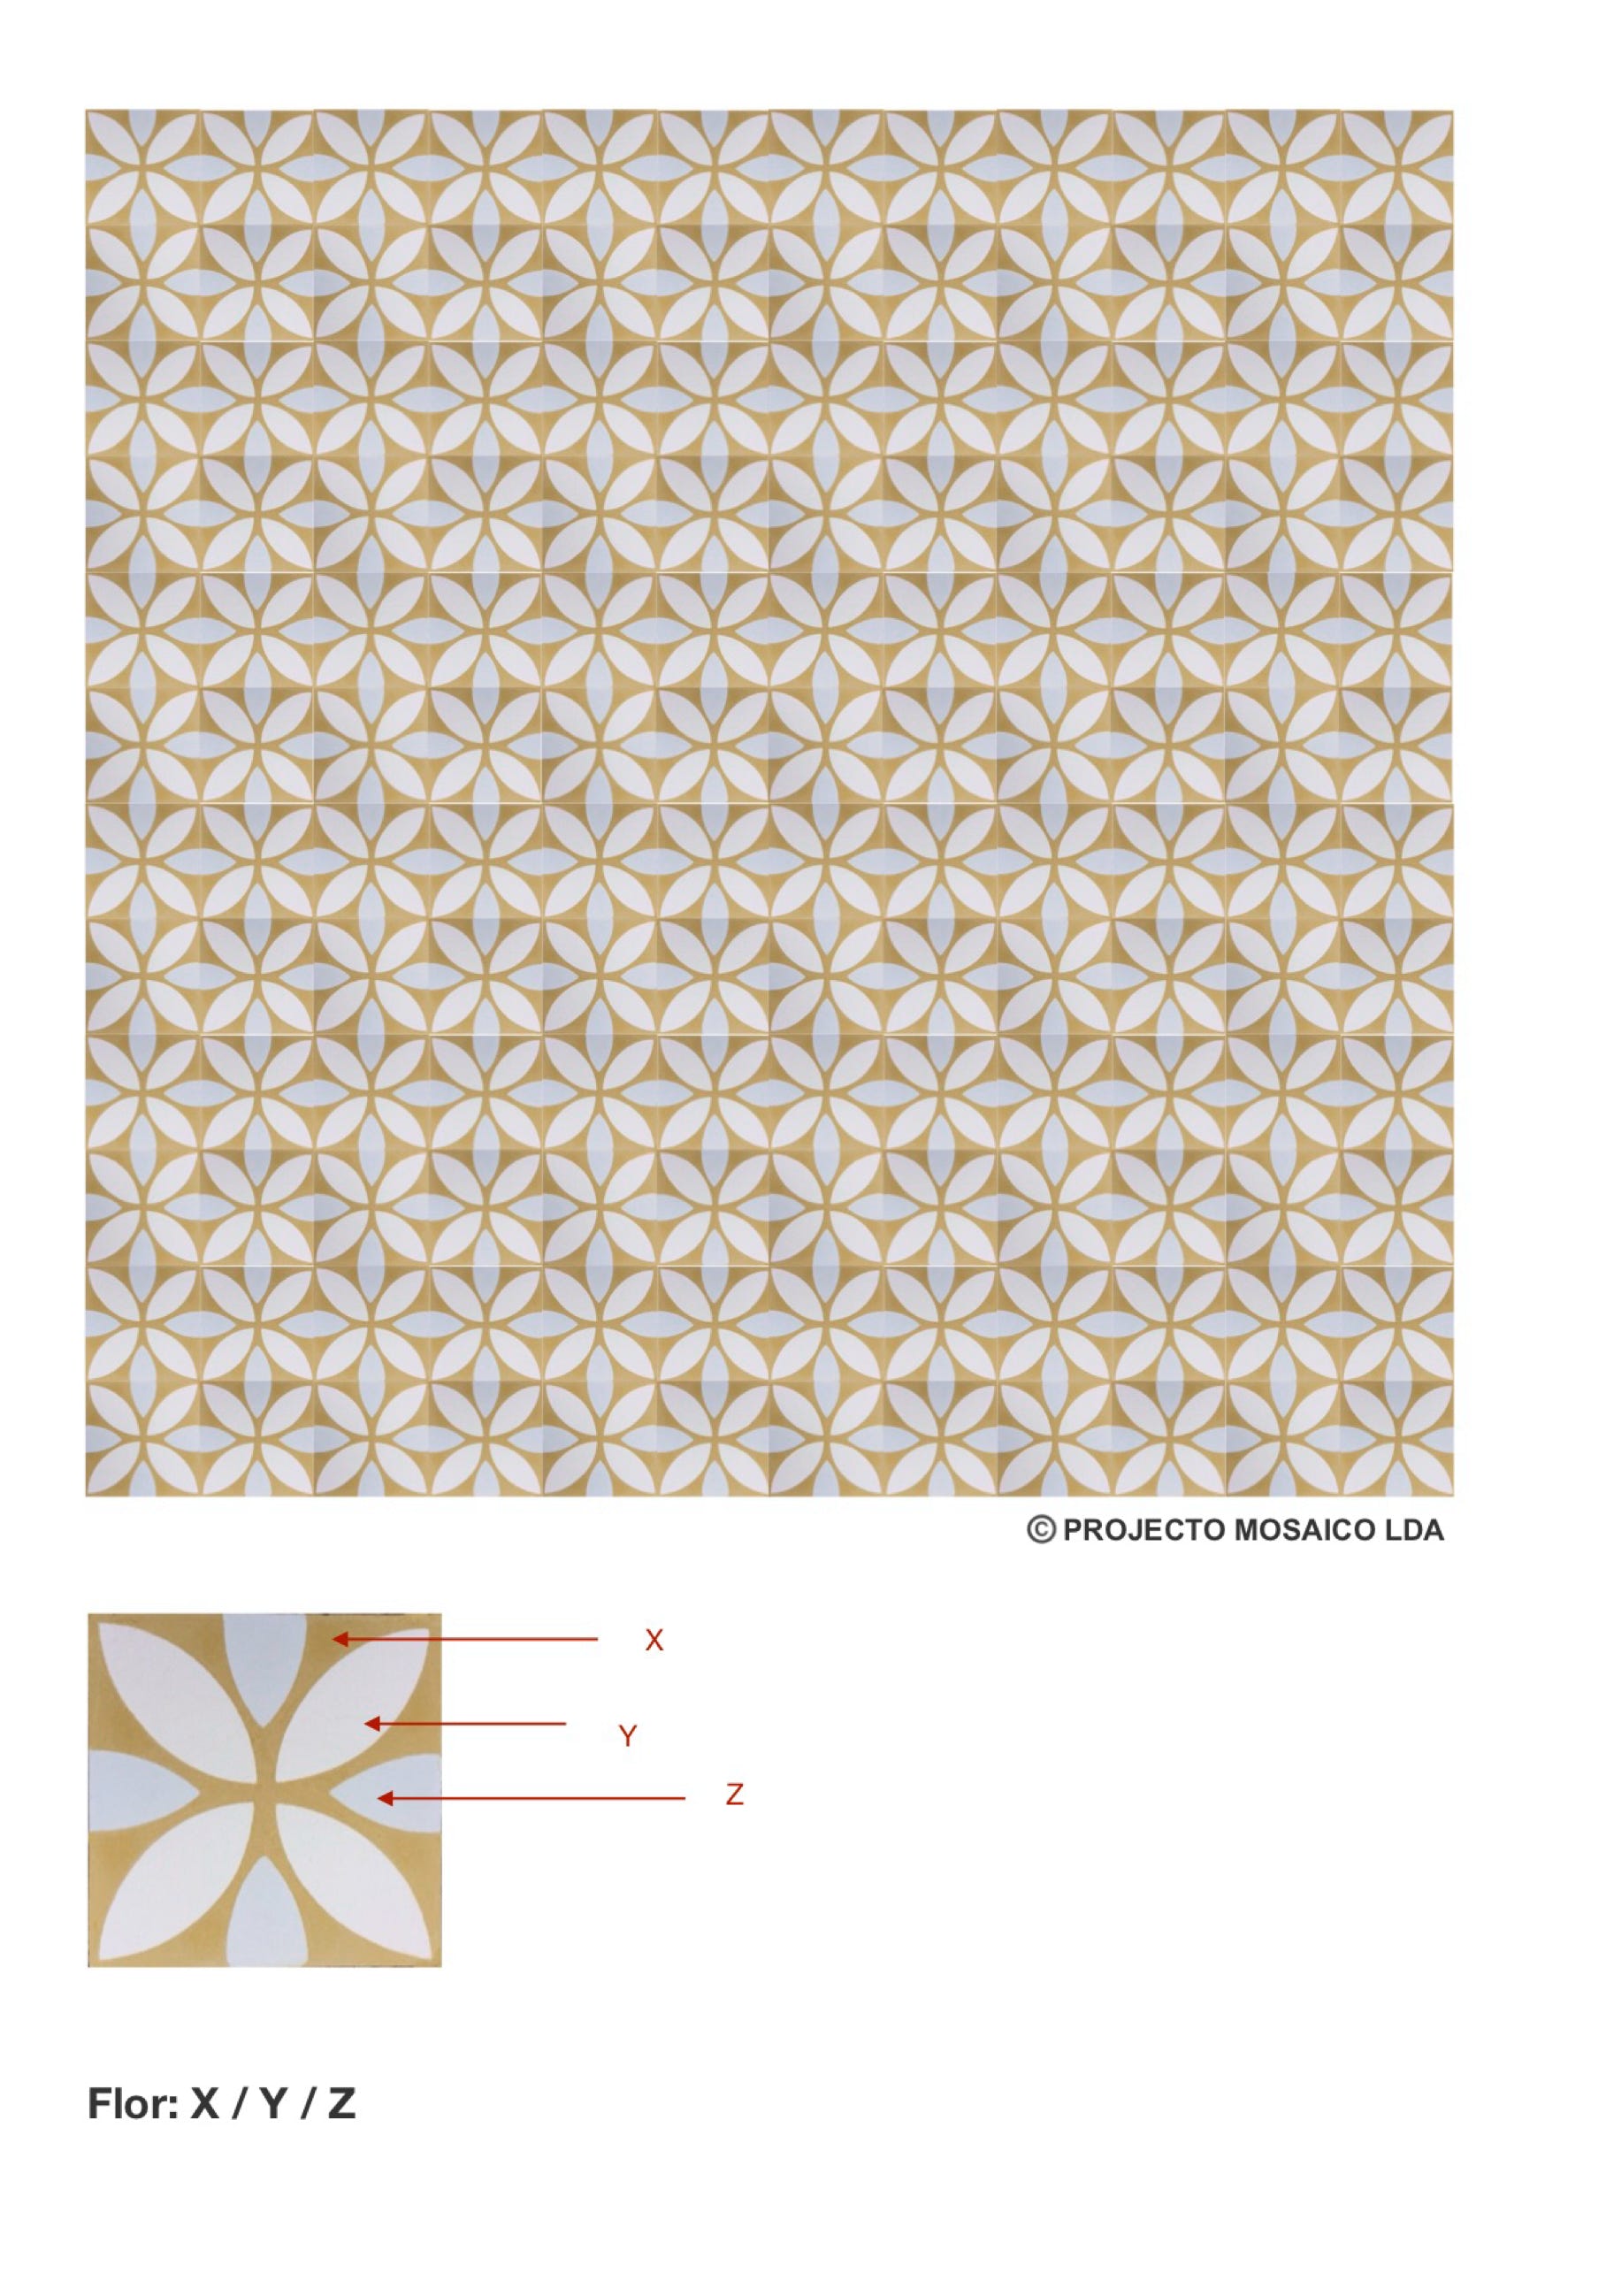 illustração de aplicação do mosaico hidráulico ref: Flor